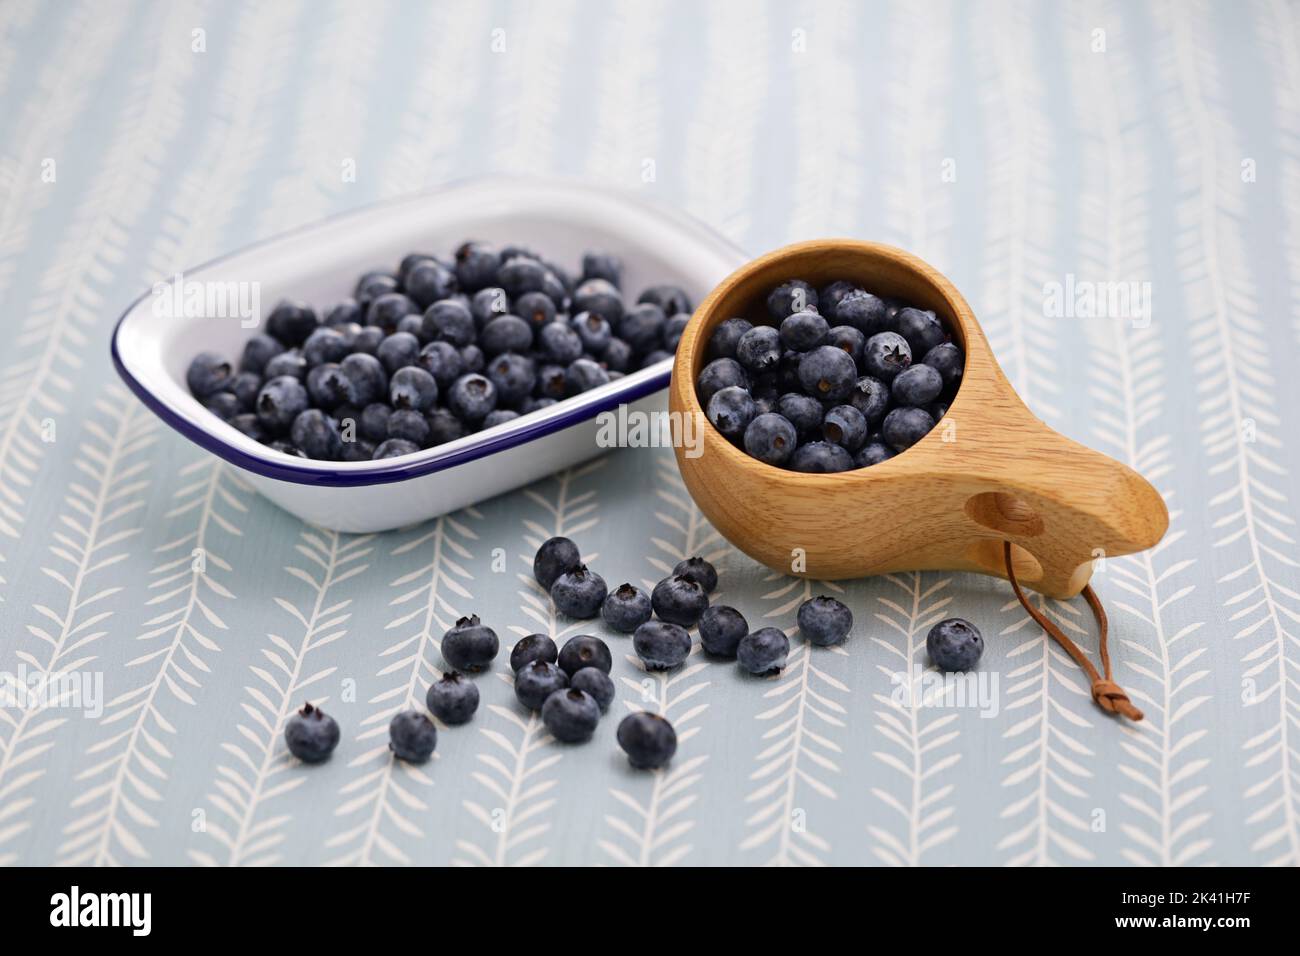 Kuksa(Finnish wooden mug) and fresh blueberries Stock Photo